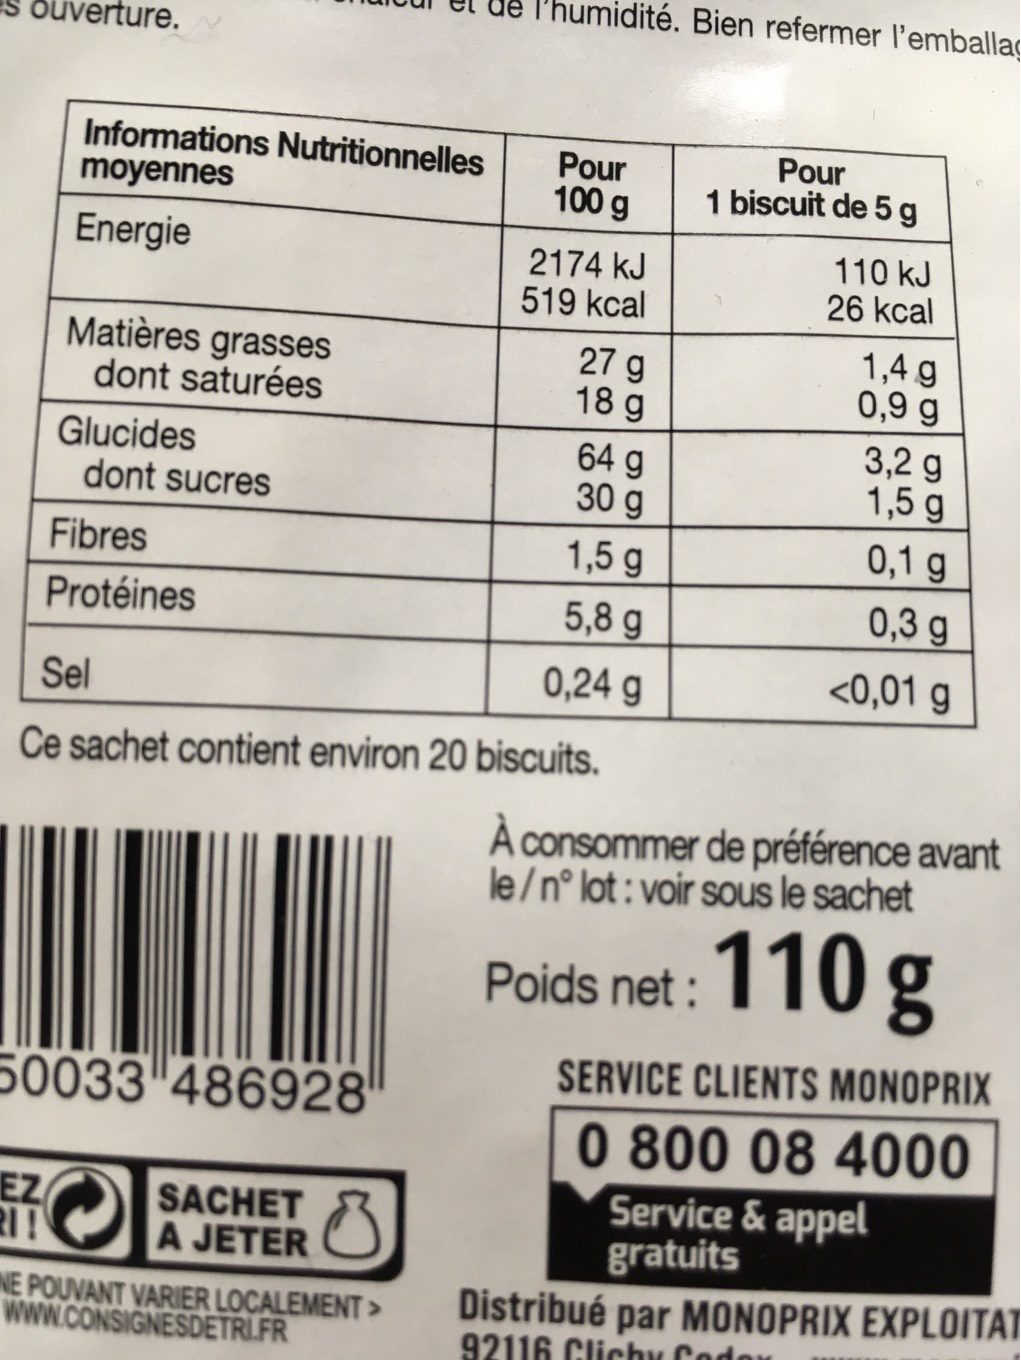 Biscuits au miel par Frédéric Lalos - Tableau nutritionnel